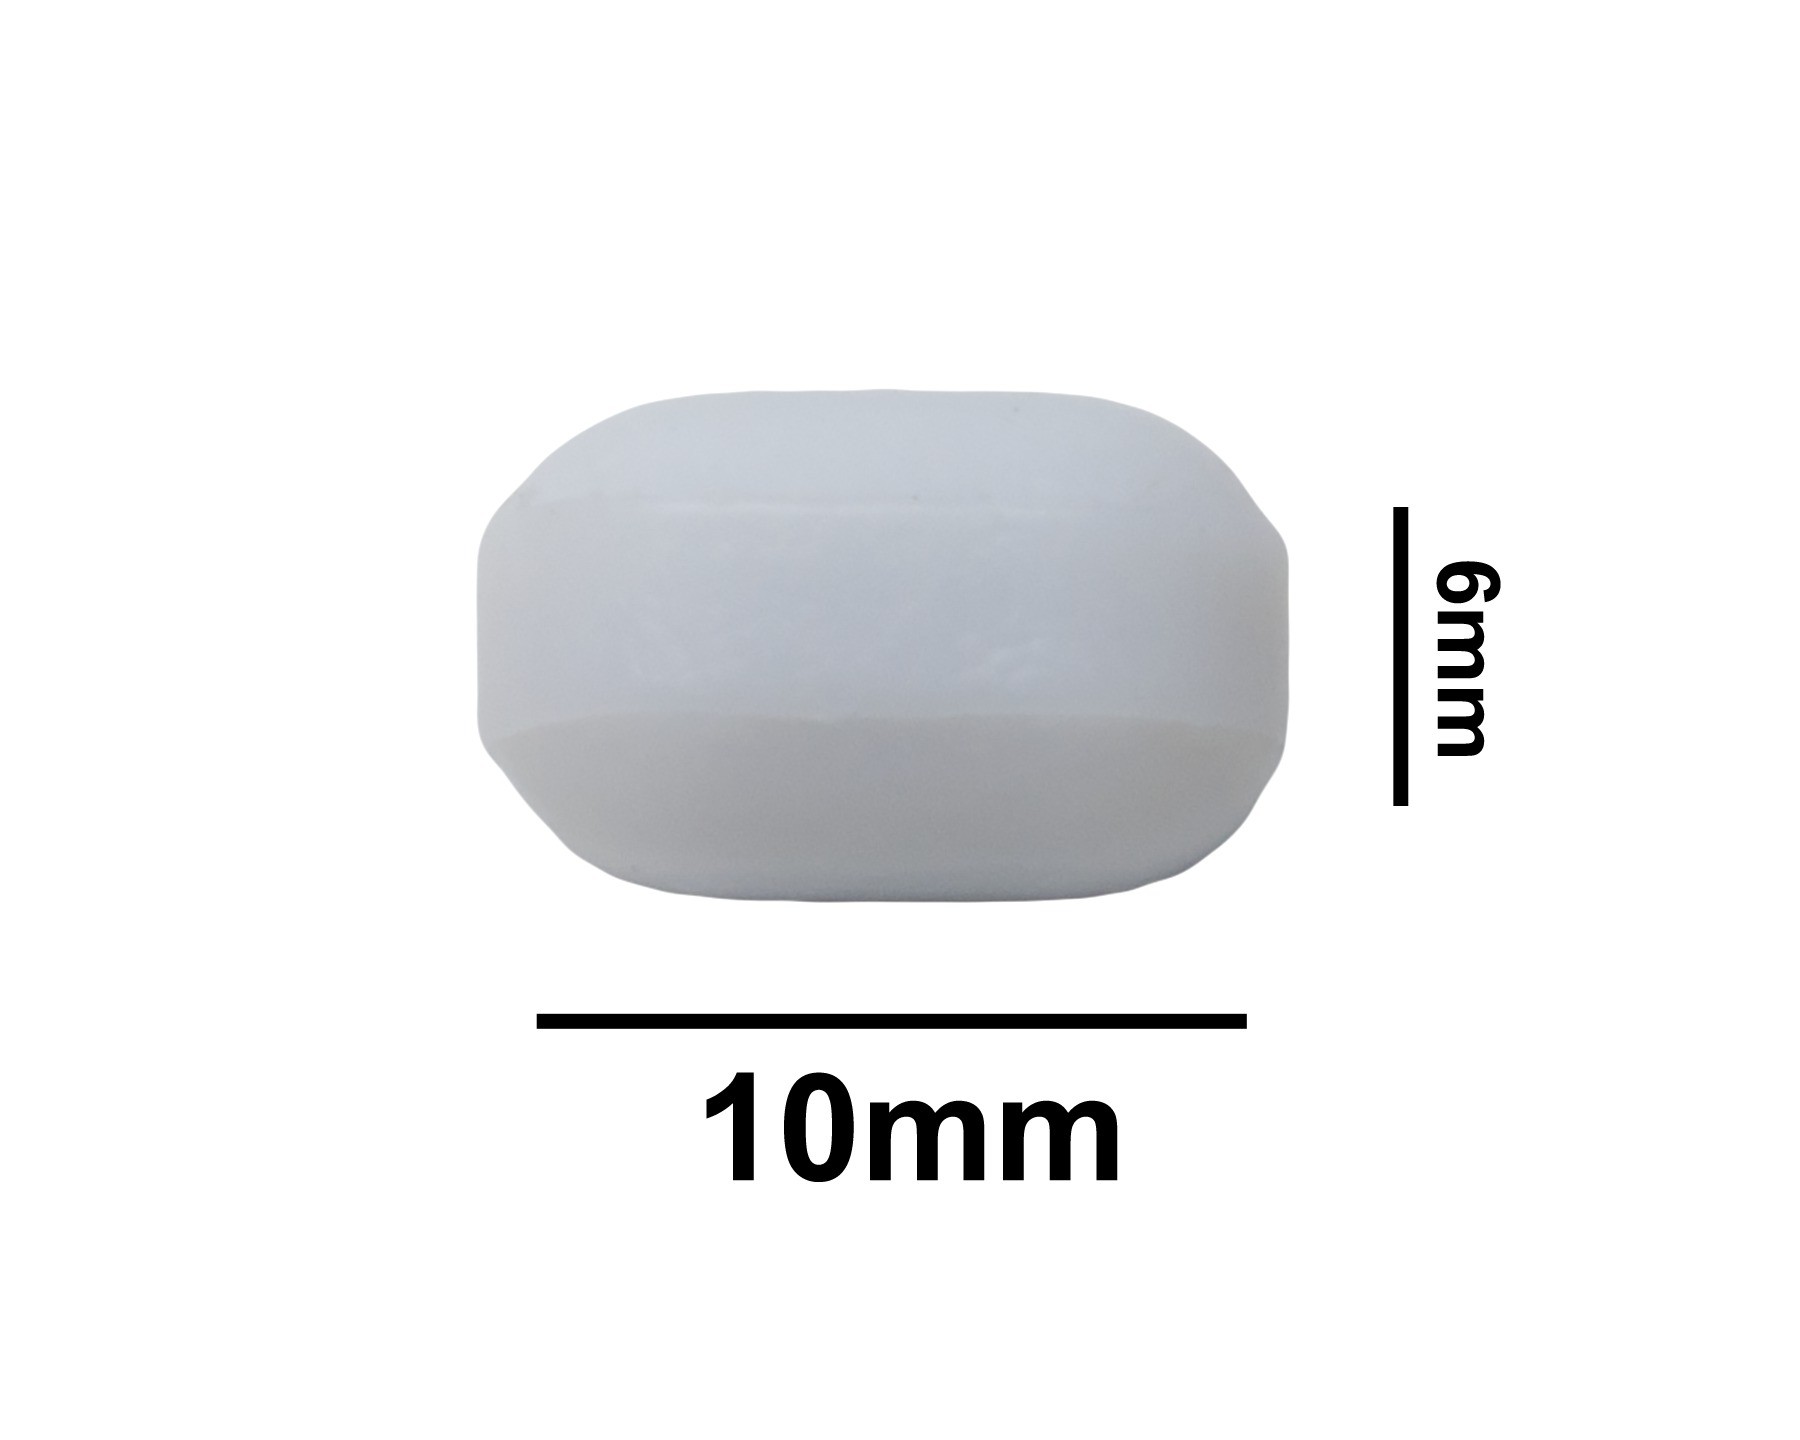 SP Bel-Art Spinbar Teflon Polygon Magnetic Stirring Bar; 10 x 6mm, White, without Pivot Ring